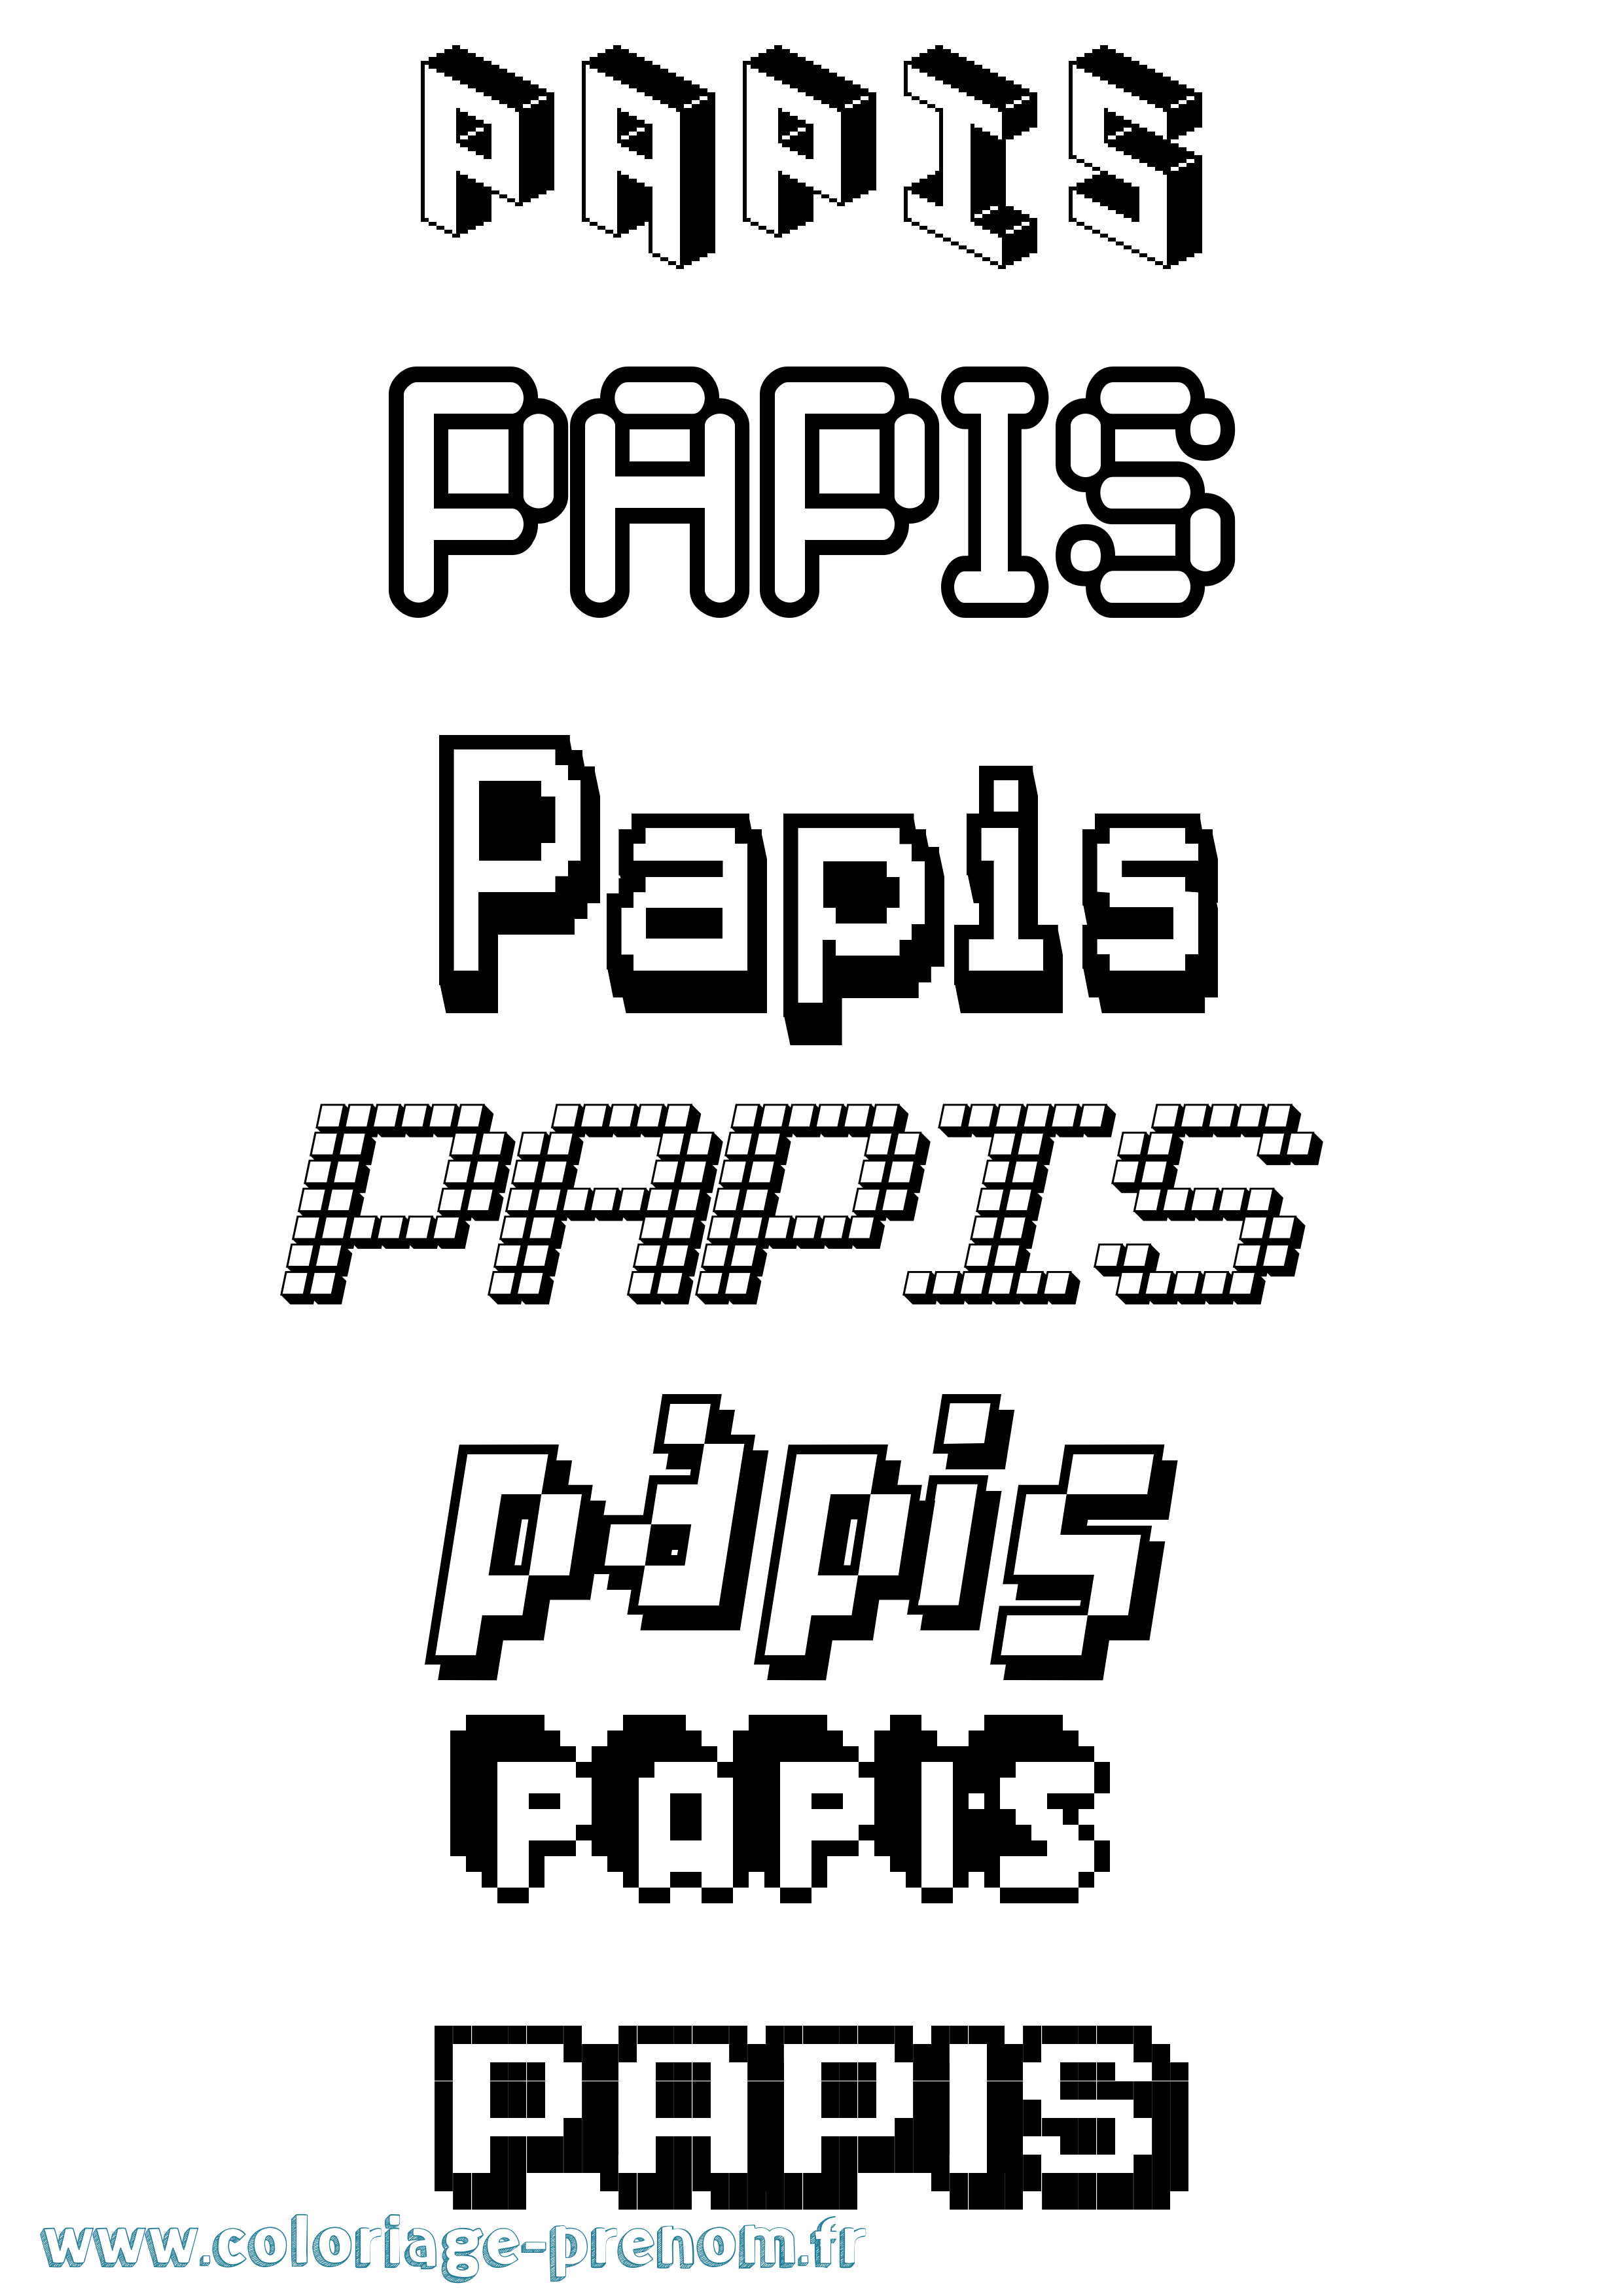 Coloriage prénom Papis Pixel